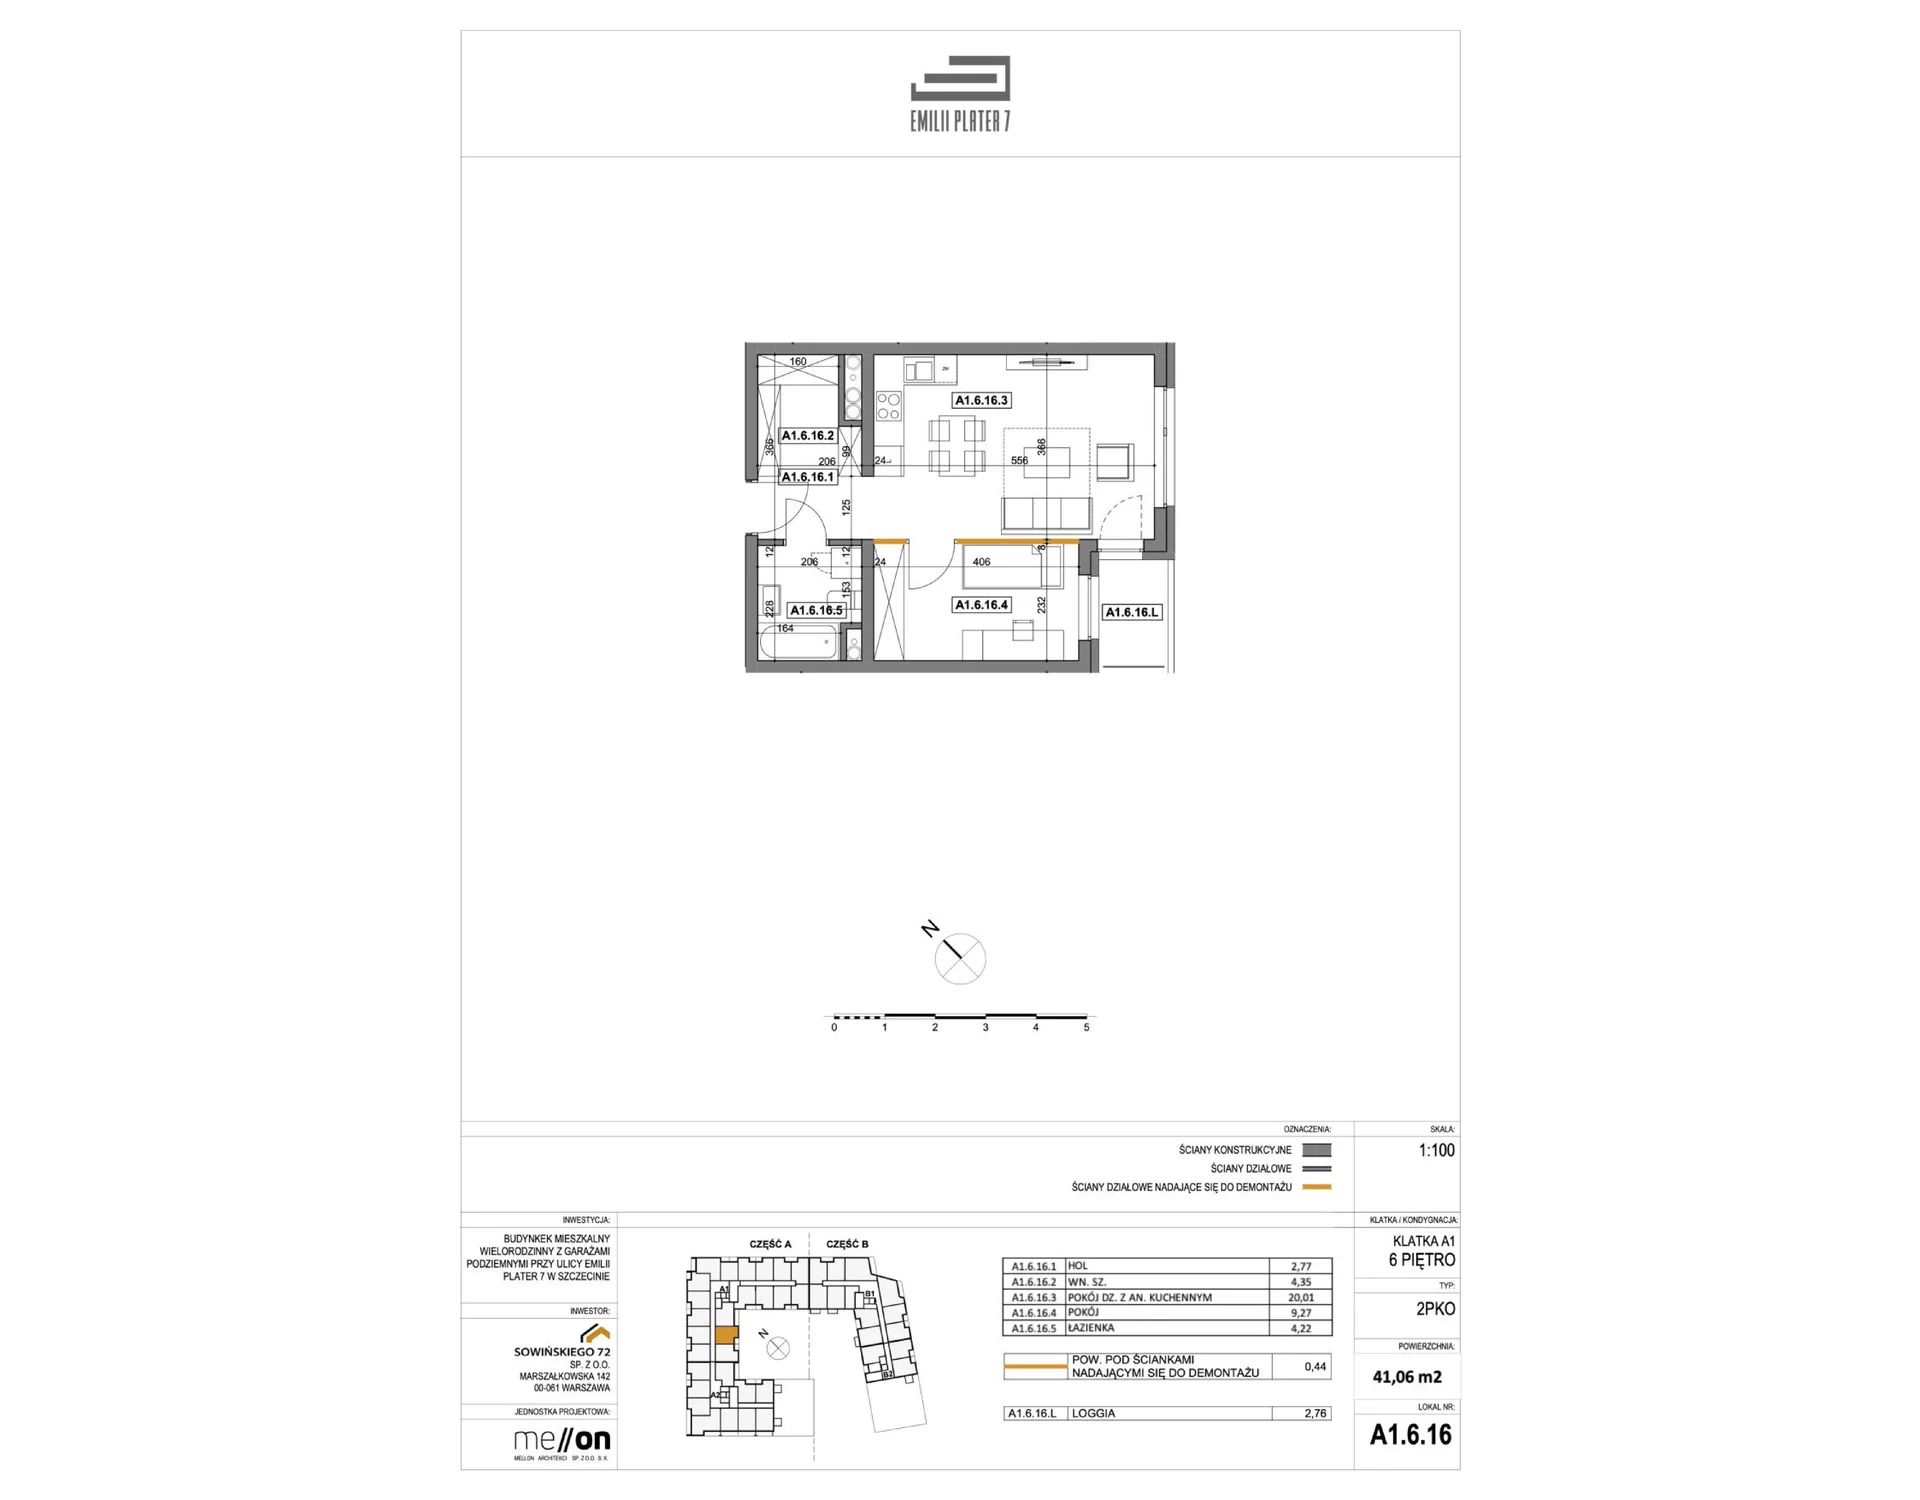 Apartament na sprzedaż 41,06 m², piętro 6, oferta nr A1.6.16